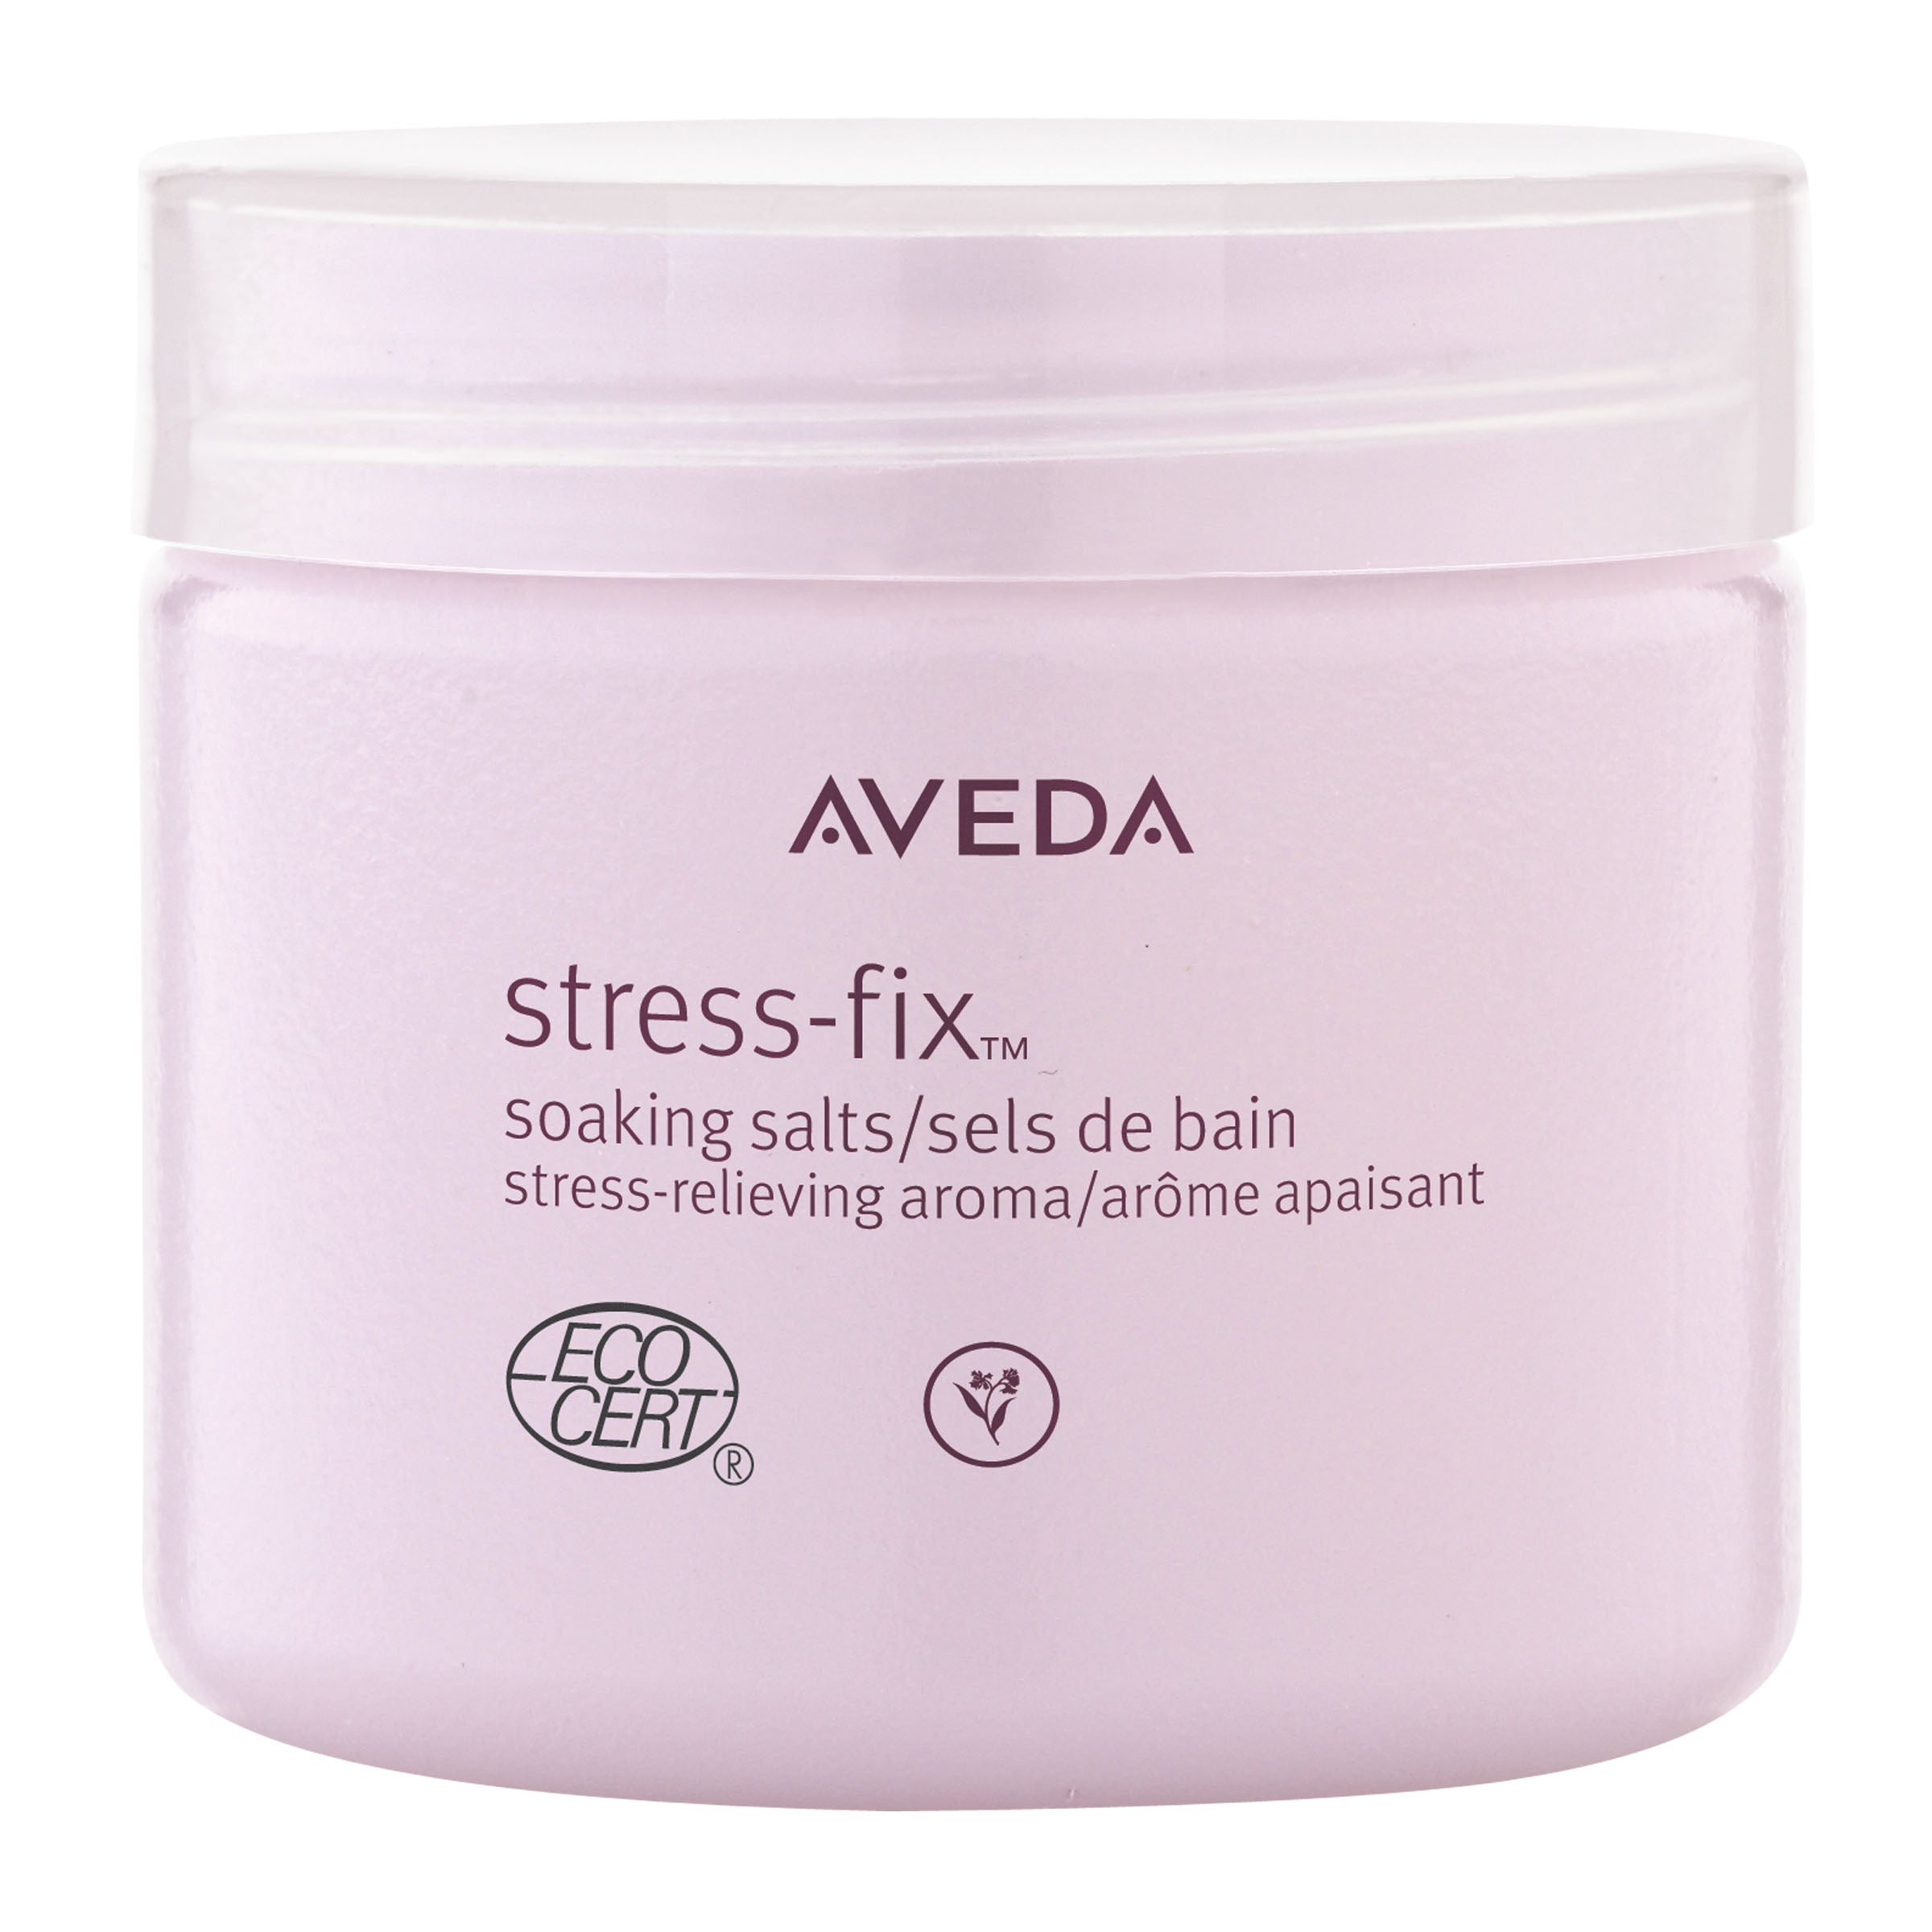 Aveda stress-fix™ soaking salts